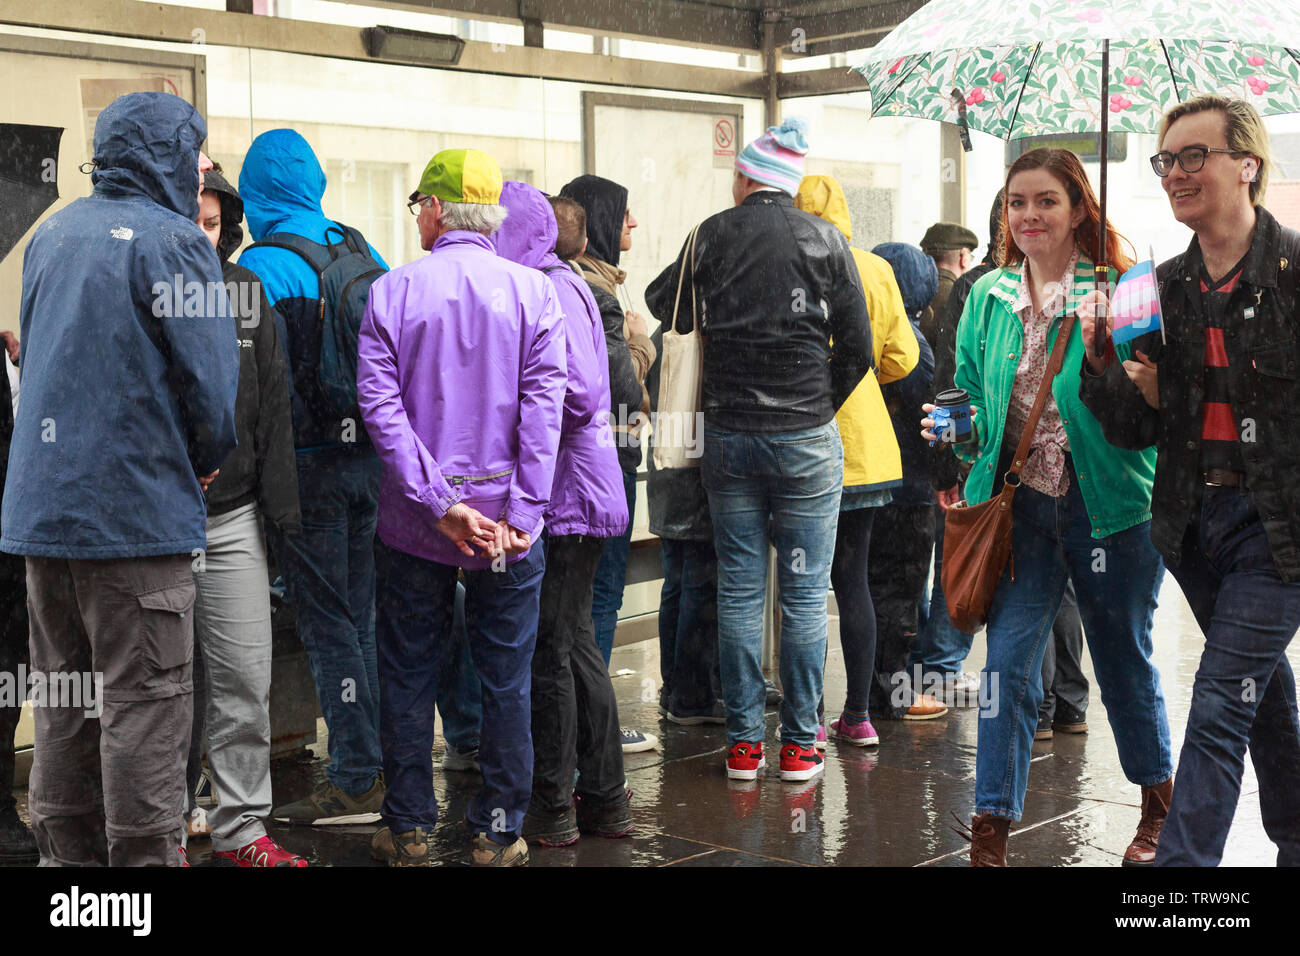 Edimbourg, Ecosse. UK. 12 juin. 2019. Météo UK. Capital d'Édimbourg est pluvieux et venteux, fortes pluies devraient venir aujourd'hui et demain. Pako Mera/Alamy Live News Banque D'Images